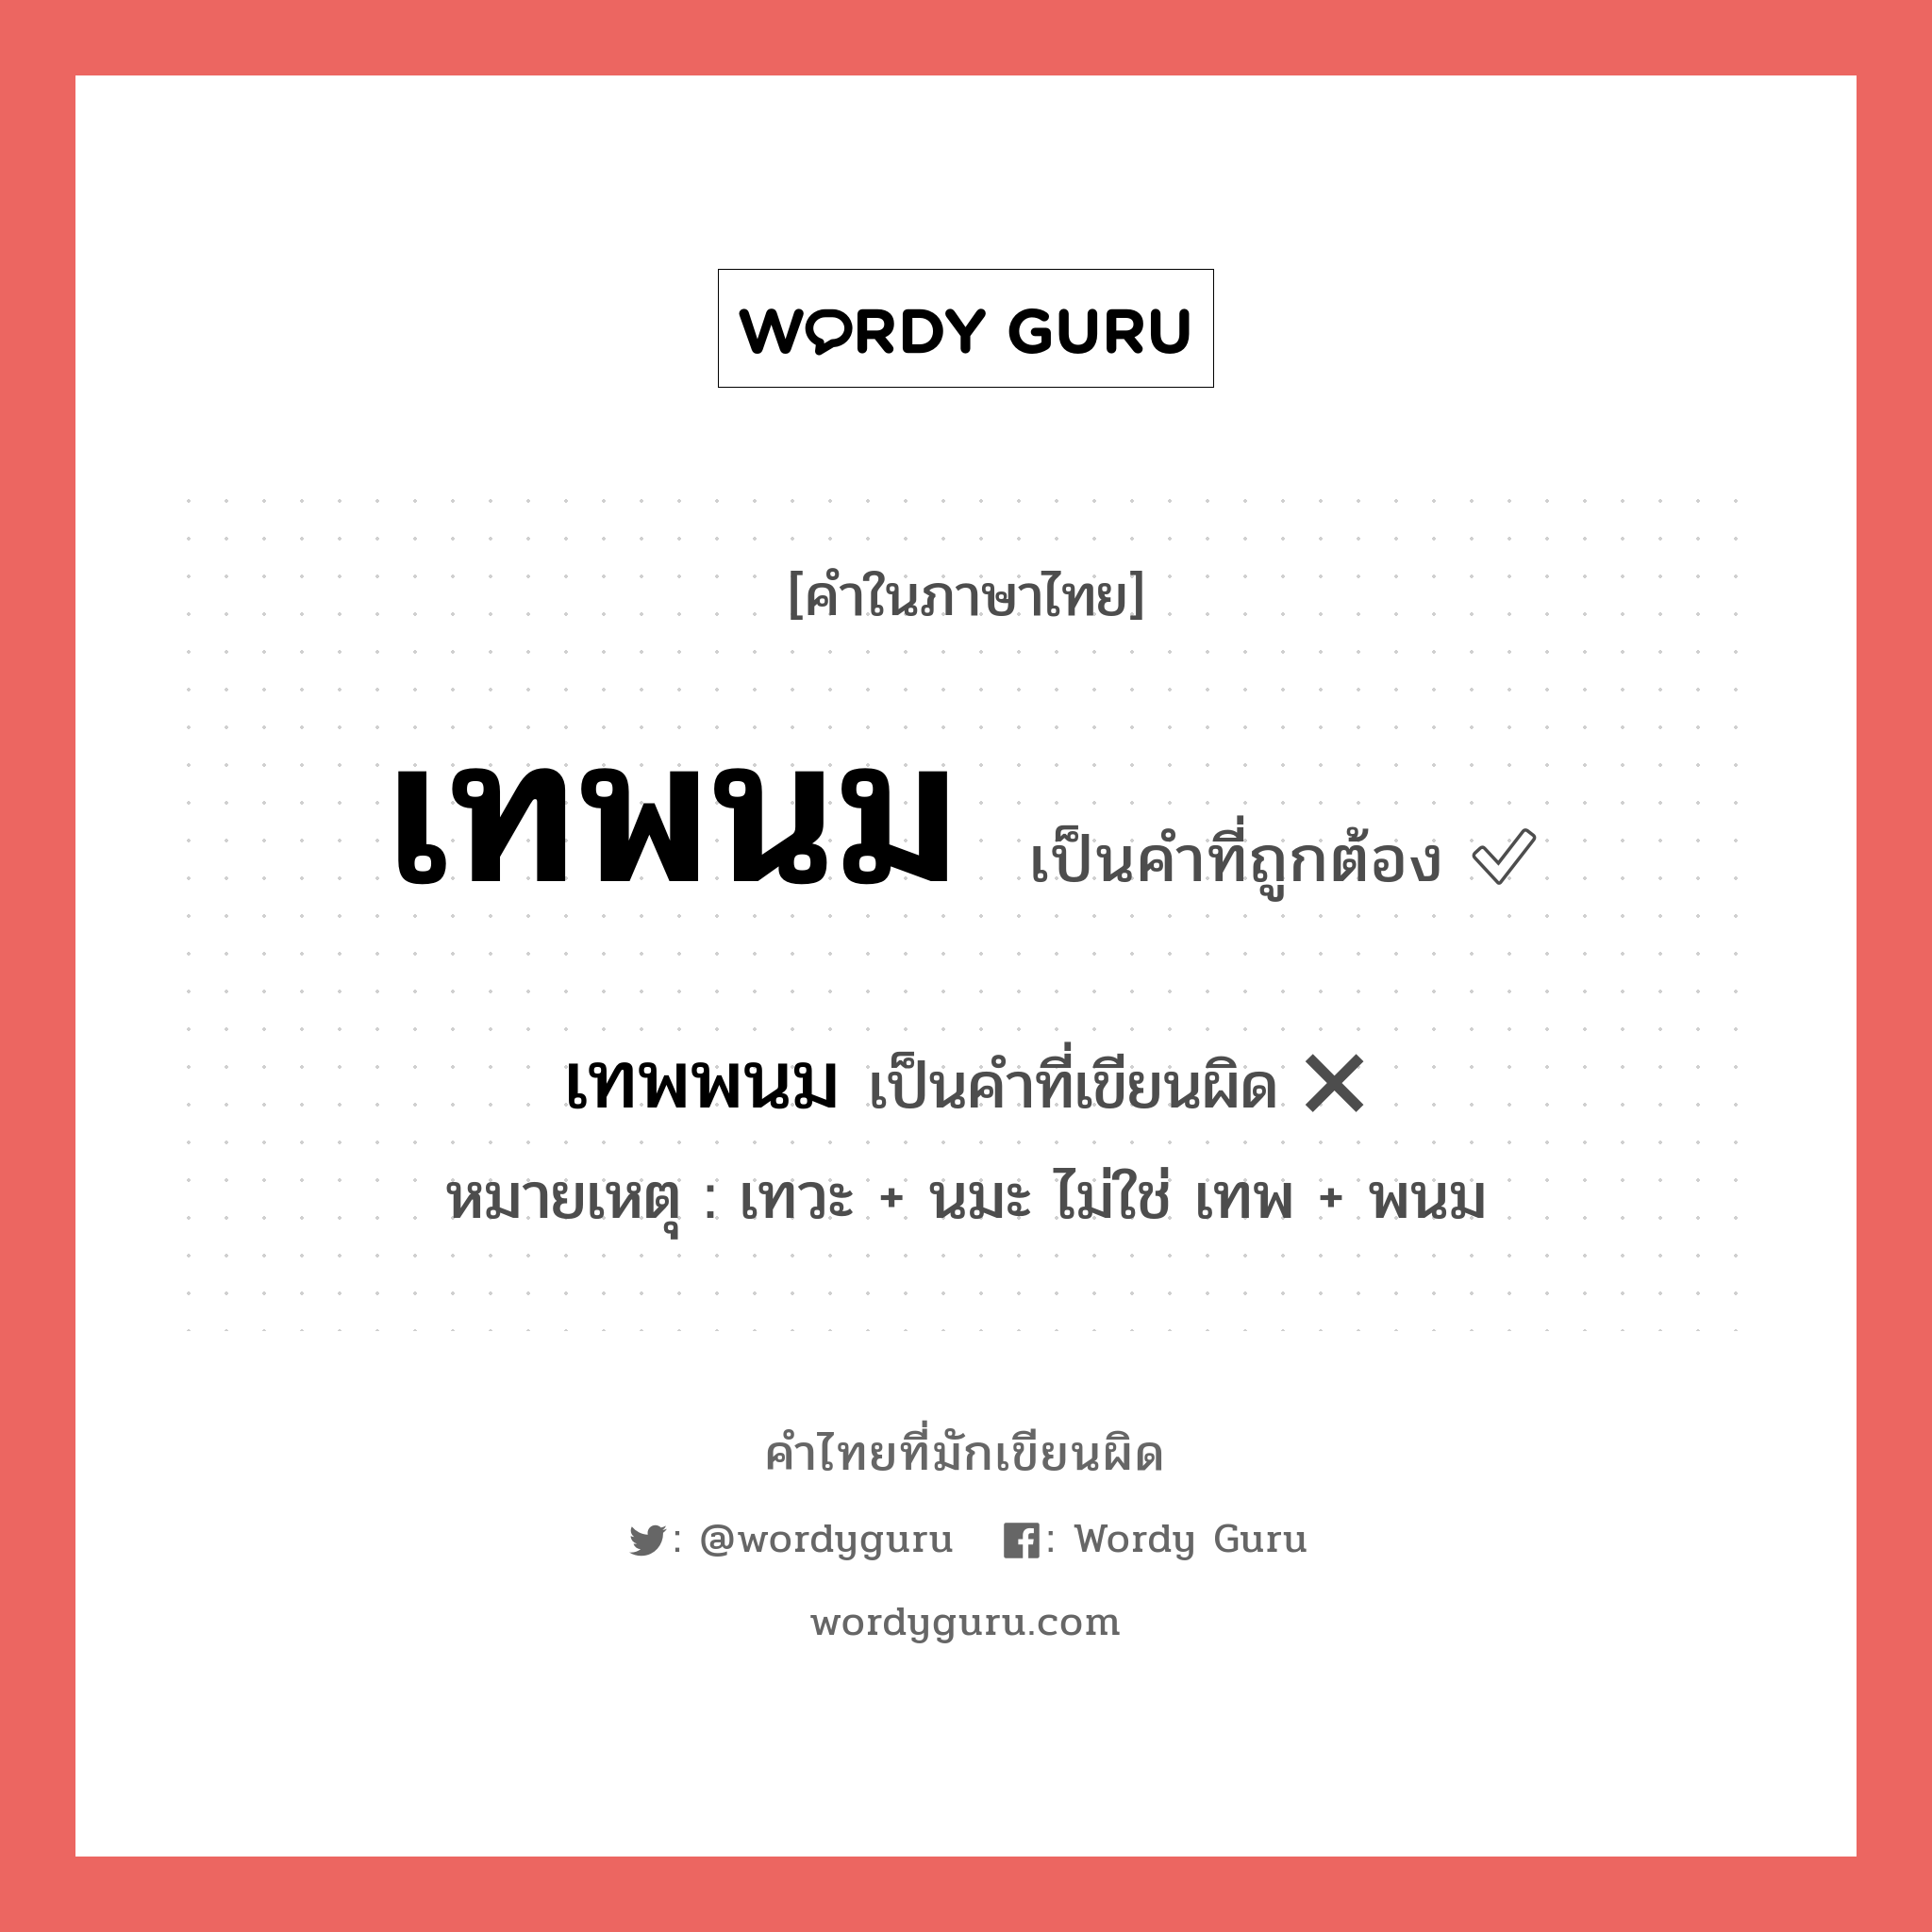 เทพนม หรือ เทพพนม เขียนยังไง? คำไหนเขียนถูก?, คำในภาษาไทยที่มักเขียนผิด เทพนม คำที่ผิด ❌ เทพพนม หมายเหตุ เทวะ + นมะ ไม่ใช่ เทพ + พนม